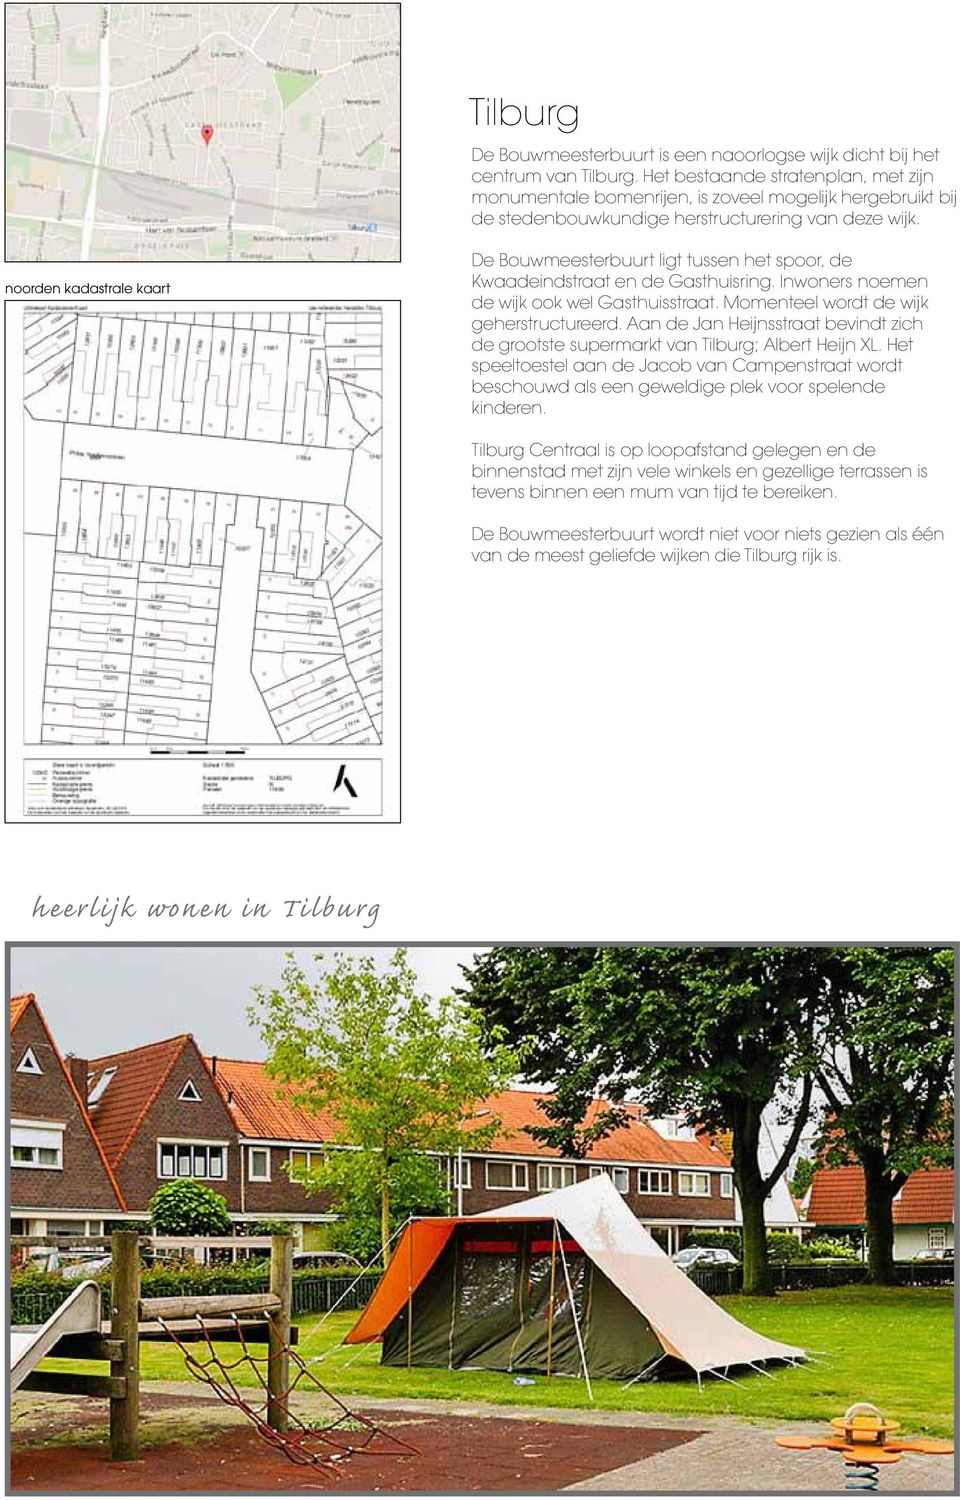 noorden kadastrale kaart De Bouwmeesterbuurt ligt tussen het spoor, de Kwaadeindstraat en de Gasthuisring. Inwoners noemen de wijk ook wel Gasthuisstraat. Momenteel wordt de wijk geherstructureerd.